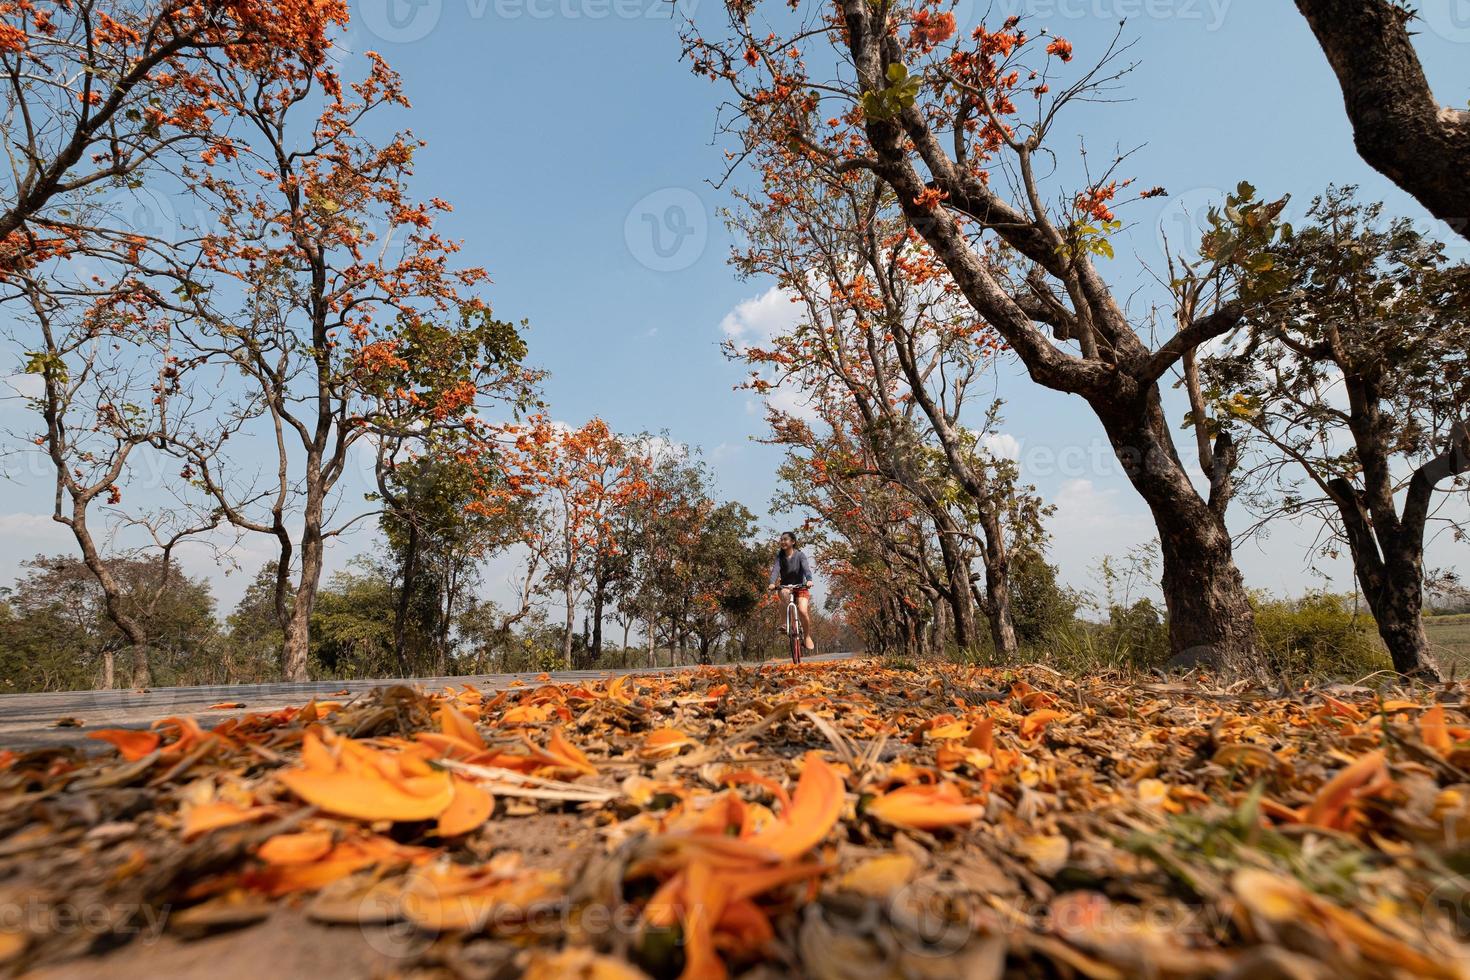 jovem andando de bicicleta durante a temporada de outono foto